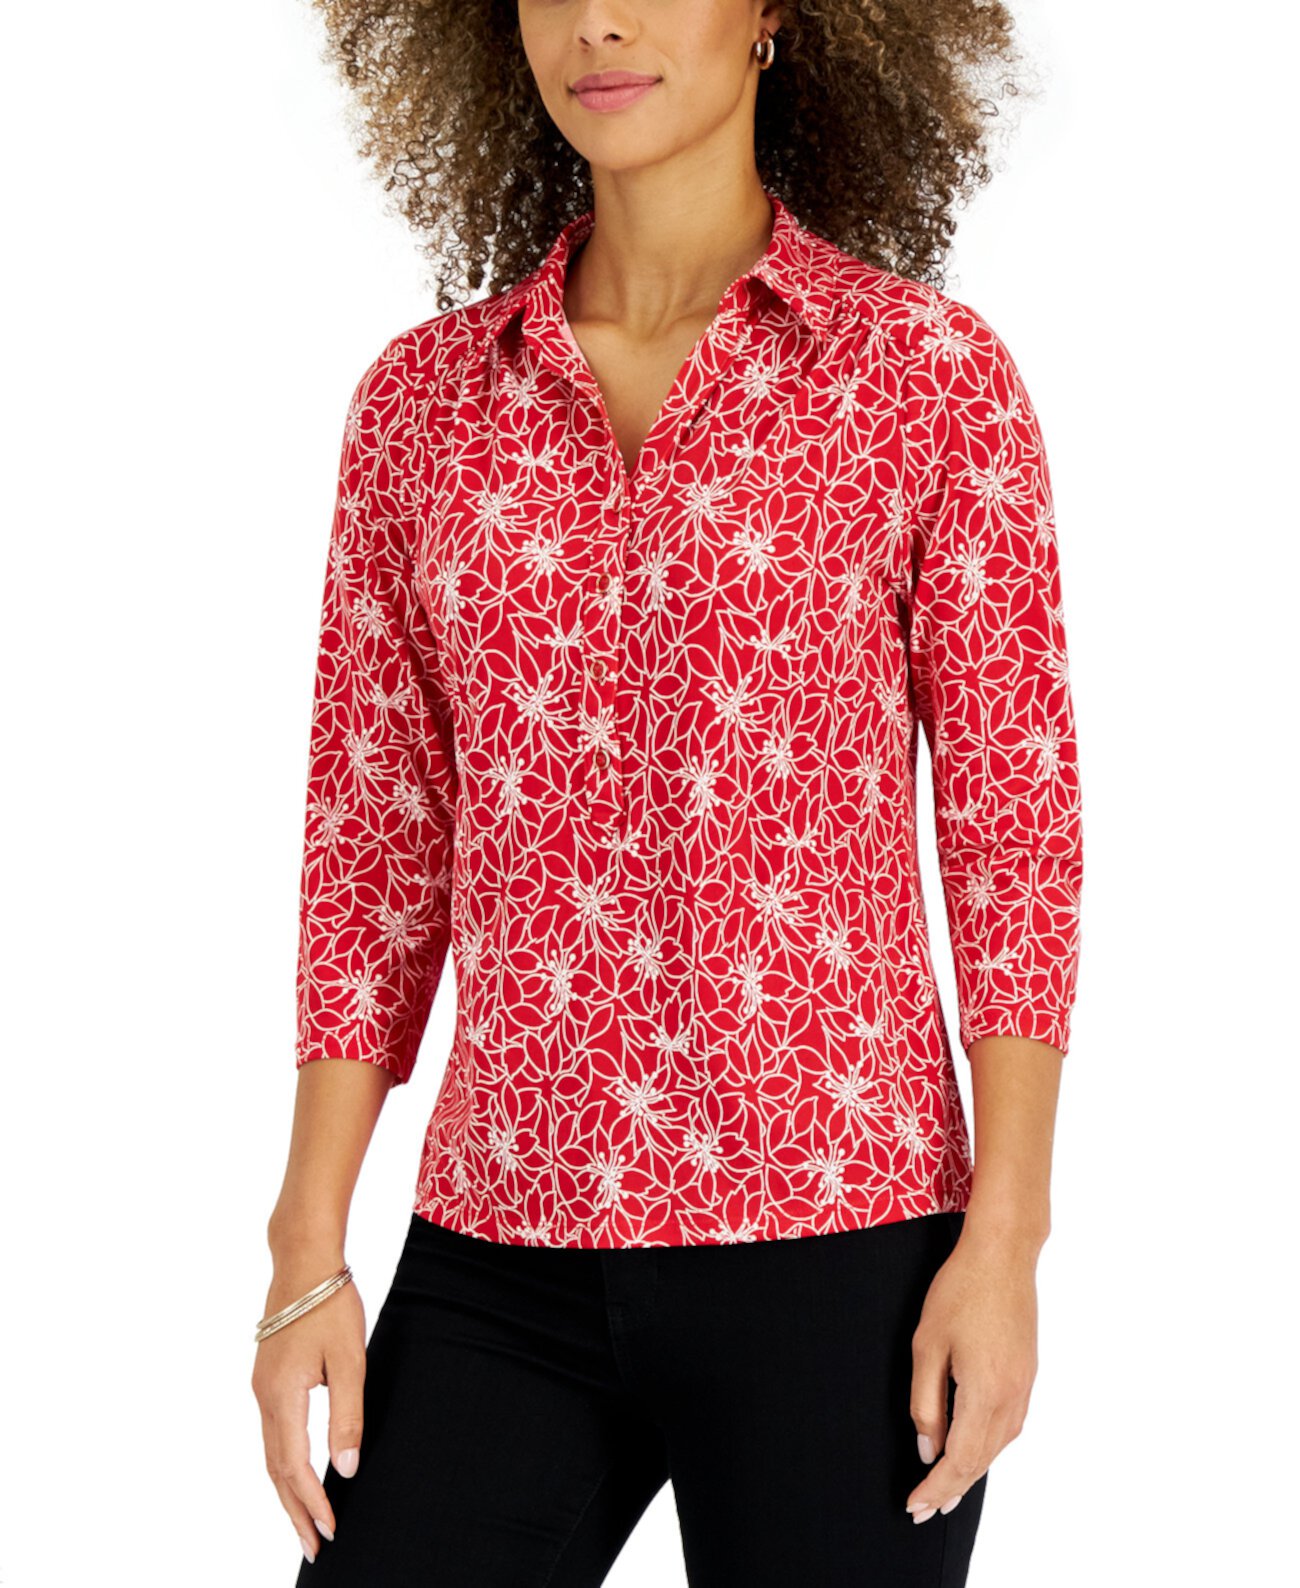 Женская футболка-поло с принтом Delicate Petals, созданная для Macy's Charter Club